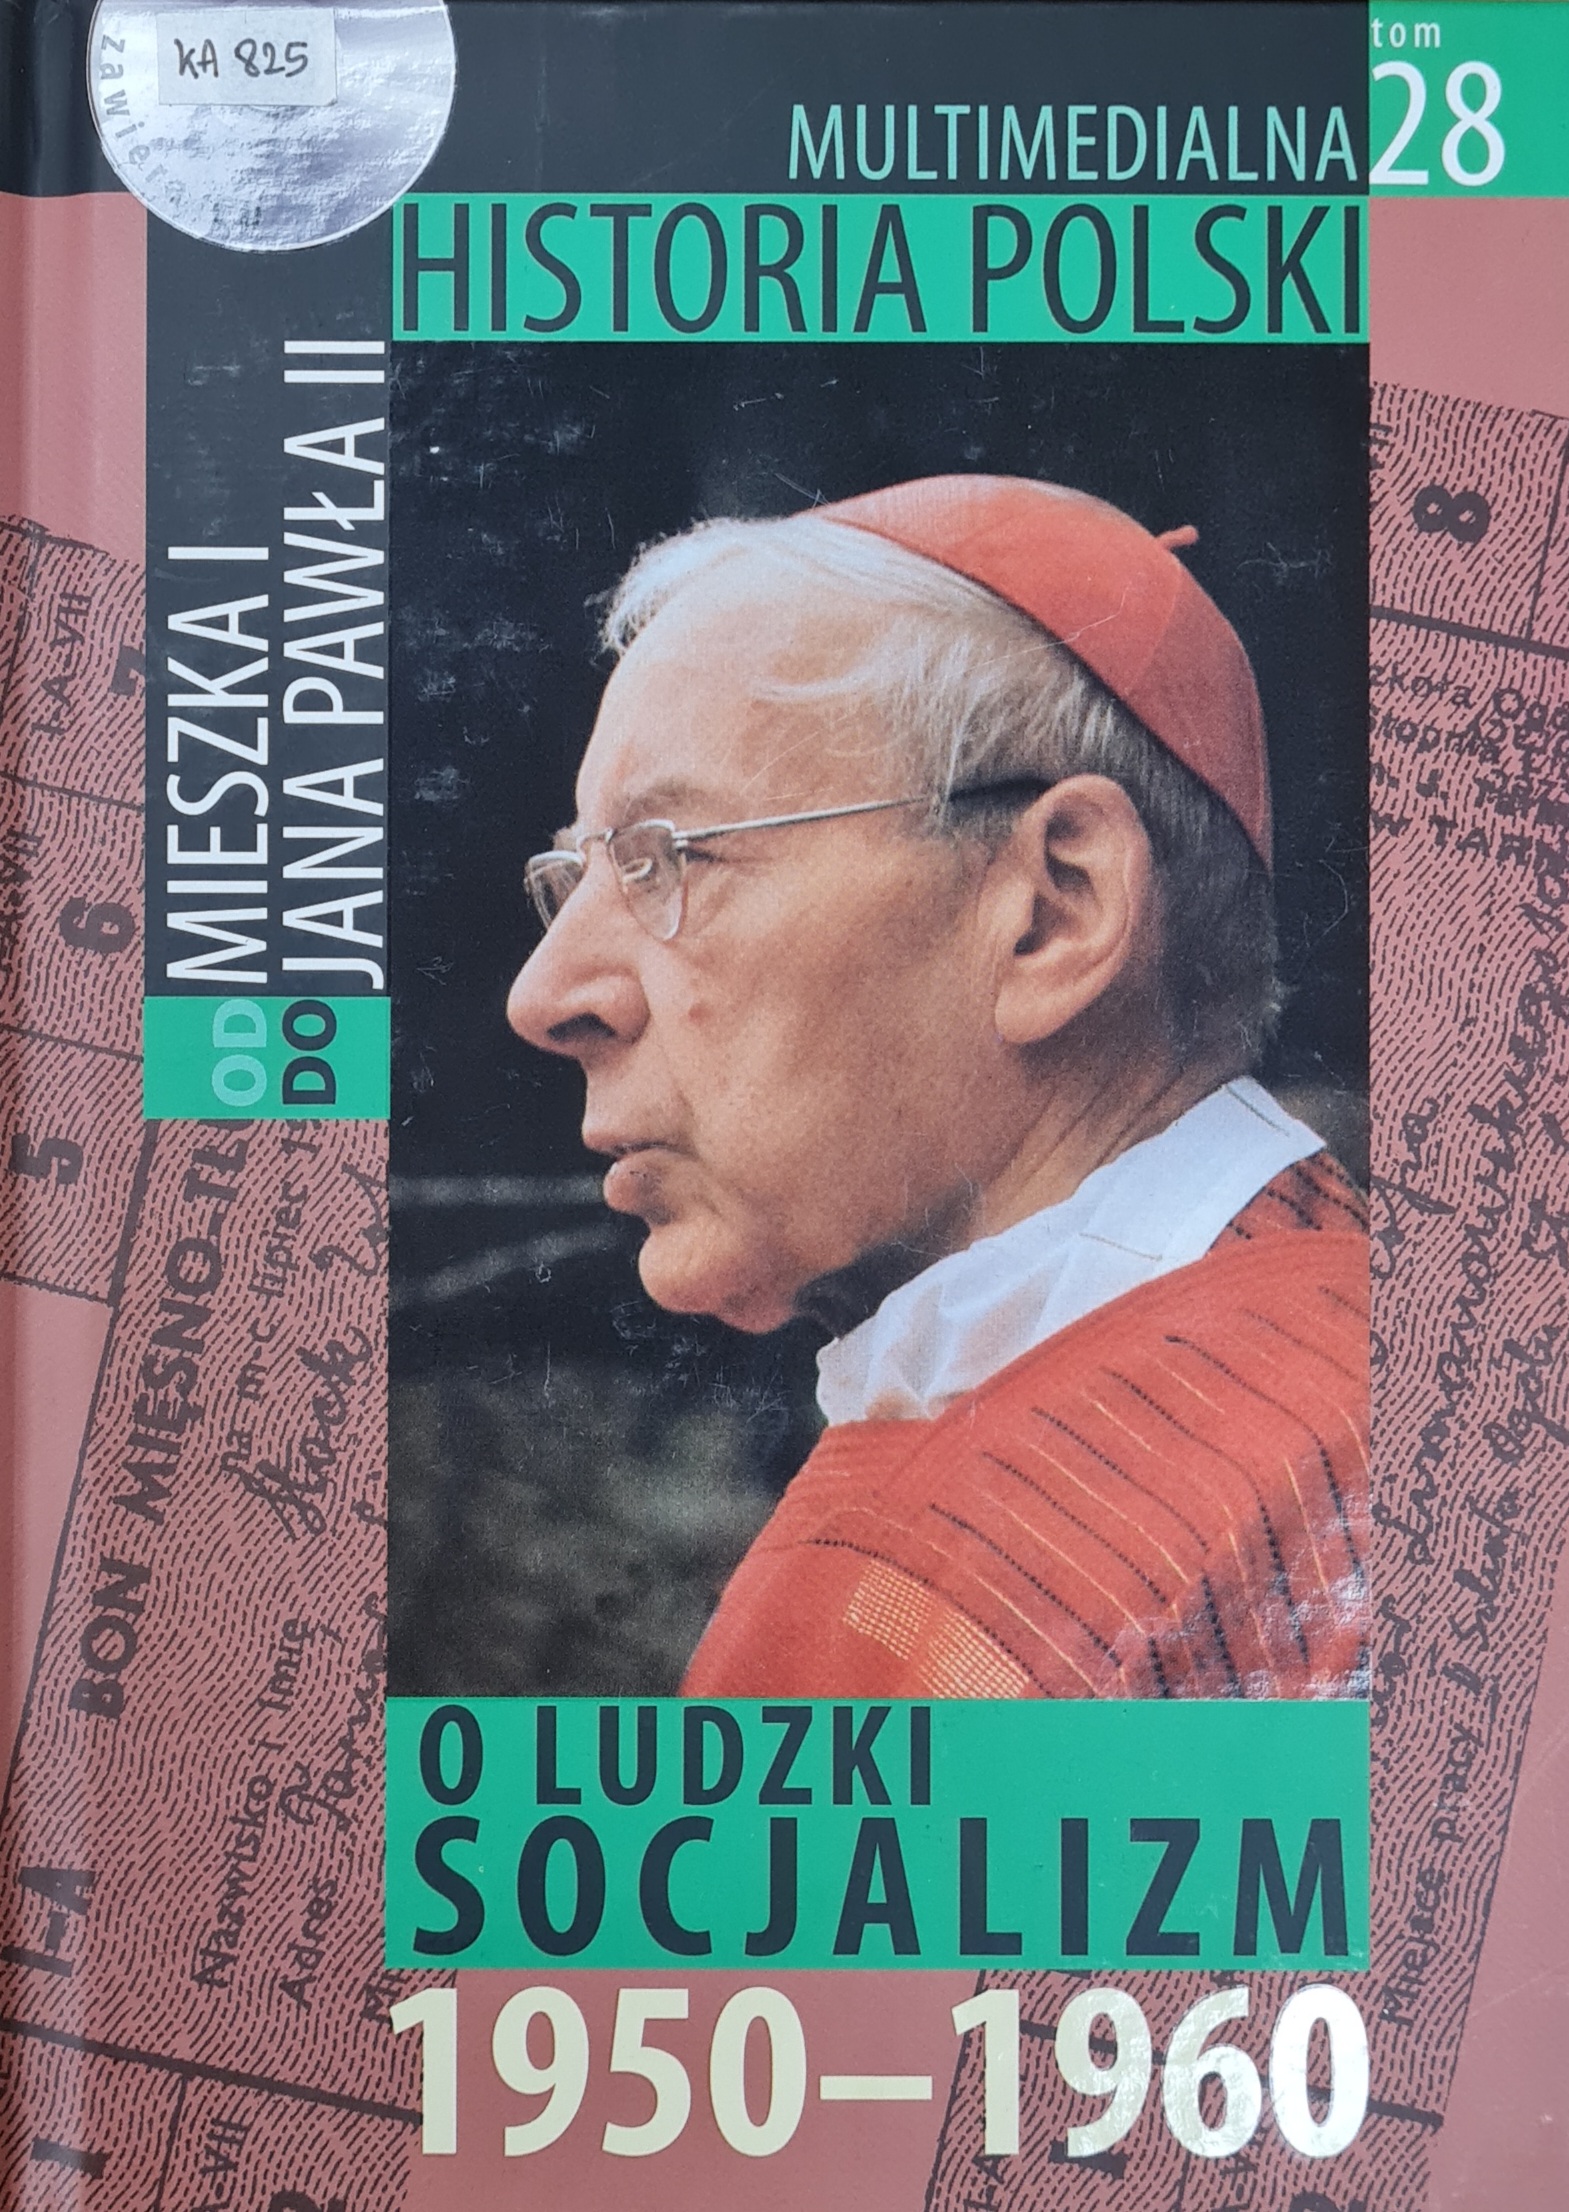 MULTIMEDIALNA HISTORIA POLSKI - OD MIESZKA I DO JANA PAWŁA II - 28. O LUDZKI SOCJALIZM 1950-1960